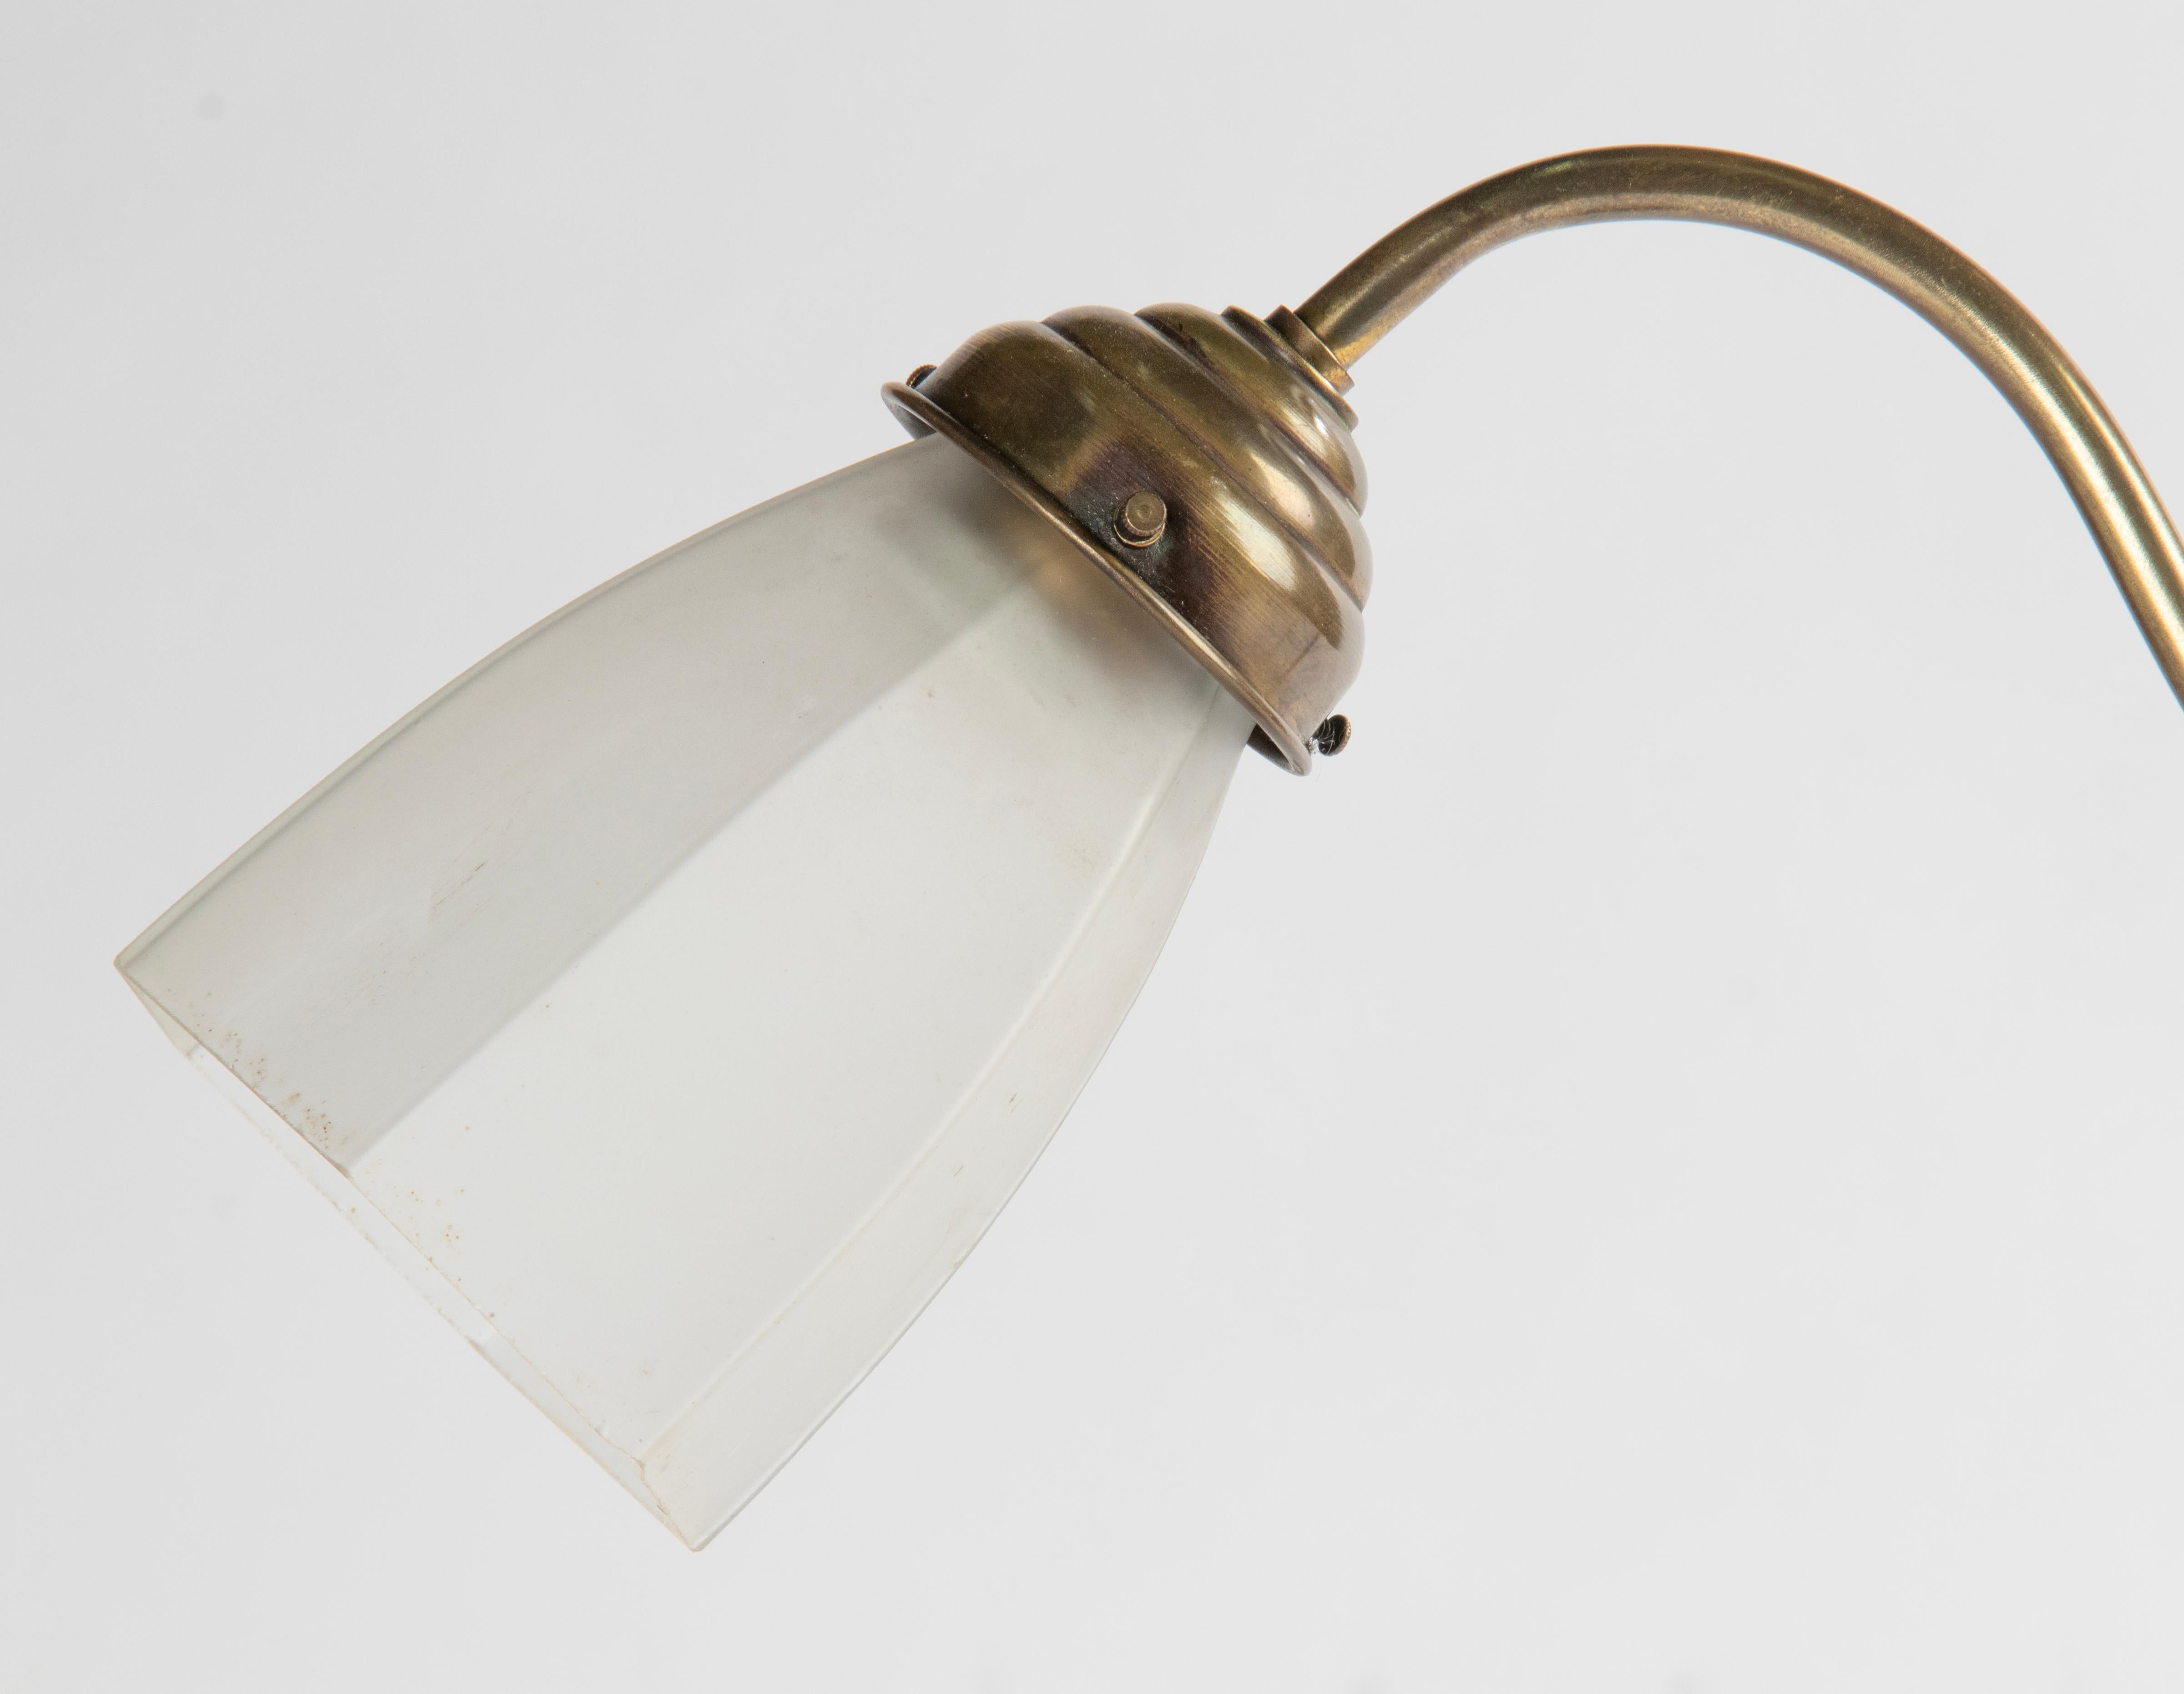 Une élégante lampe de table ou de bureau ancienne, avec un abat-jour en verre ancien. La base et la tige sont en cuivre. Sur le dessus, un anneau pour remplacer la lampe, décoré d'un gland et d'une feuille de chêne. La lampe est réglable en hauteur.